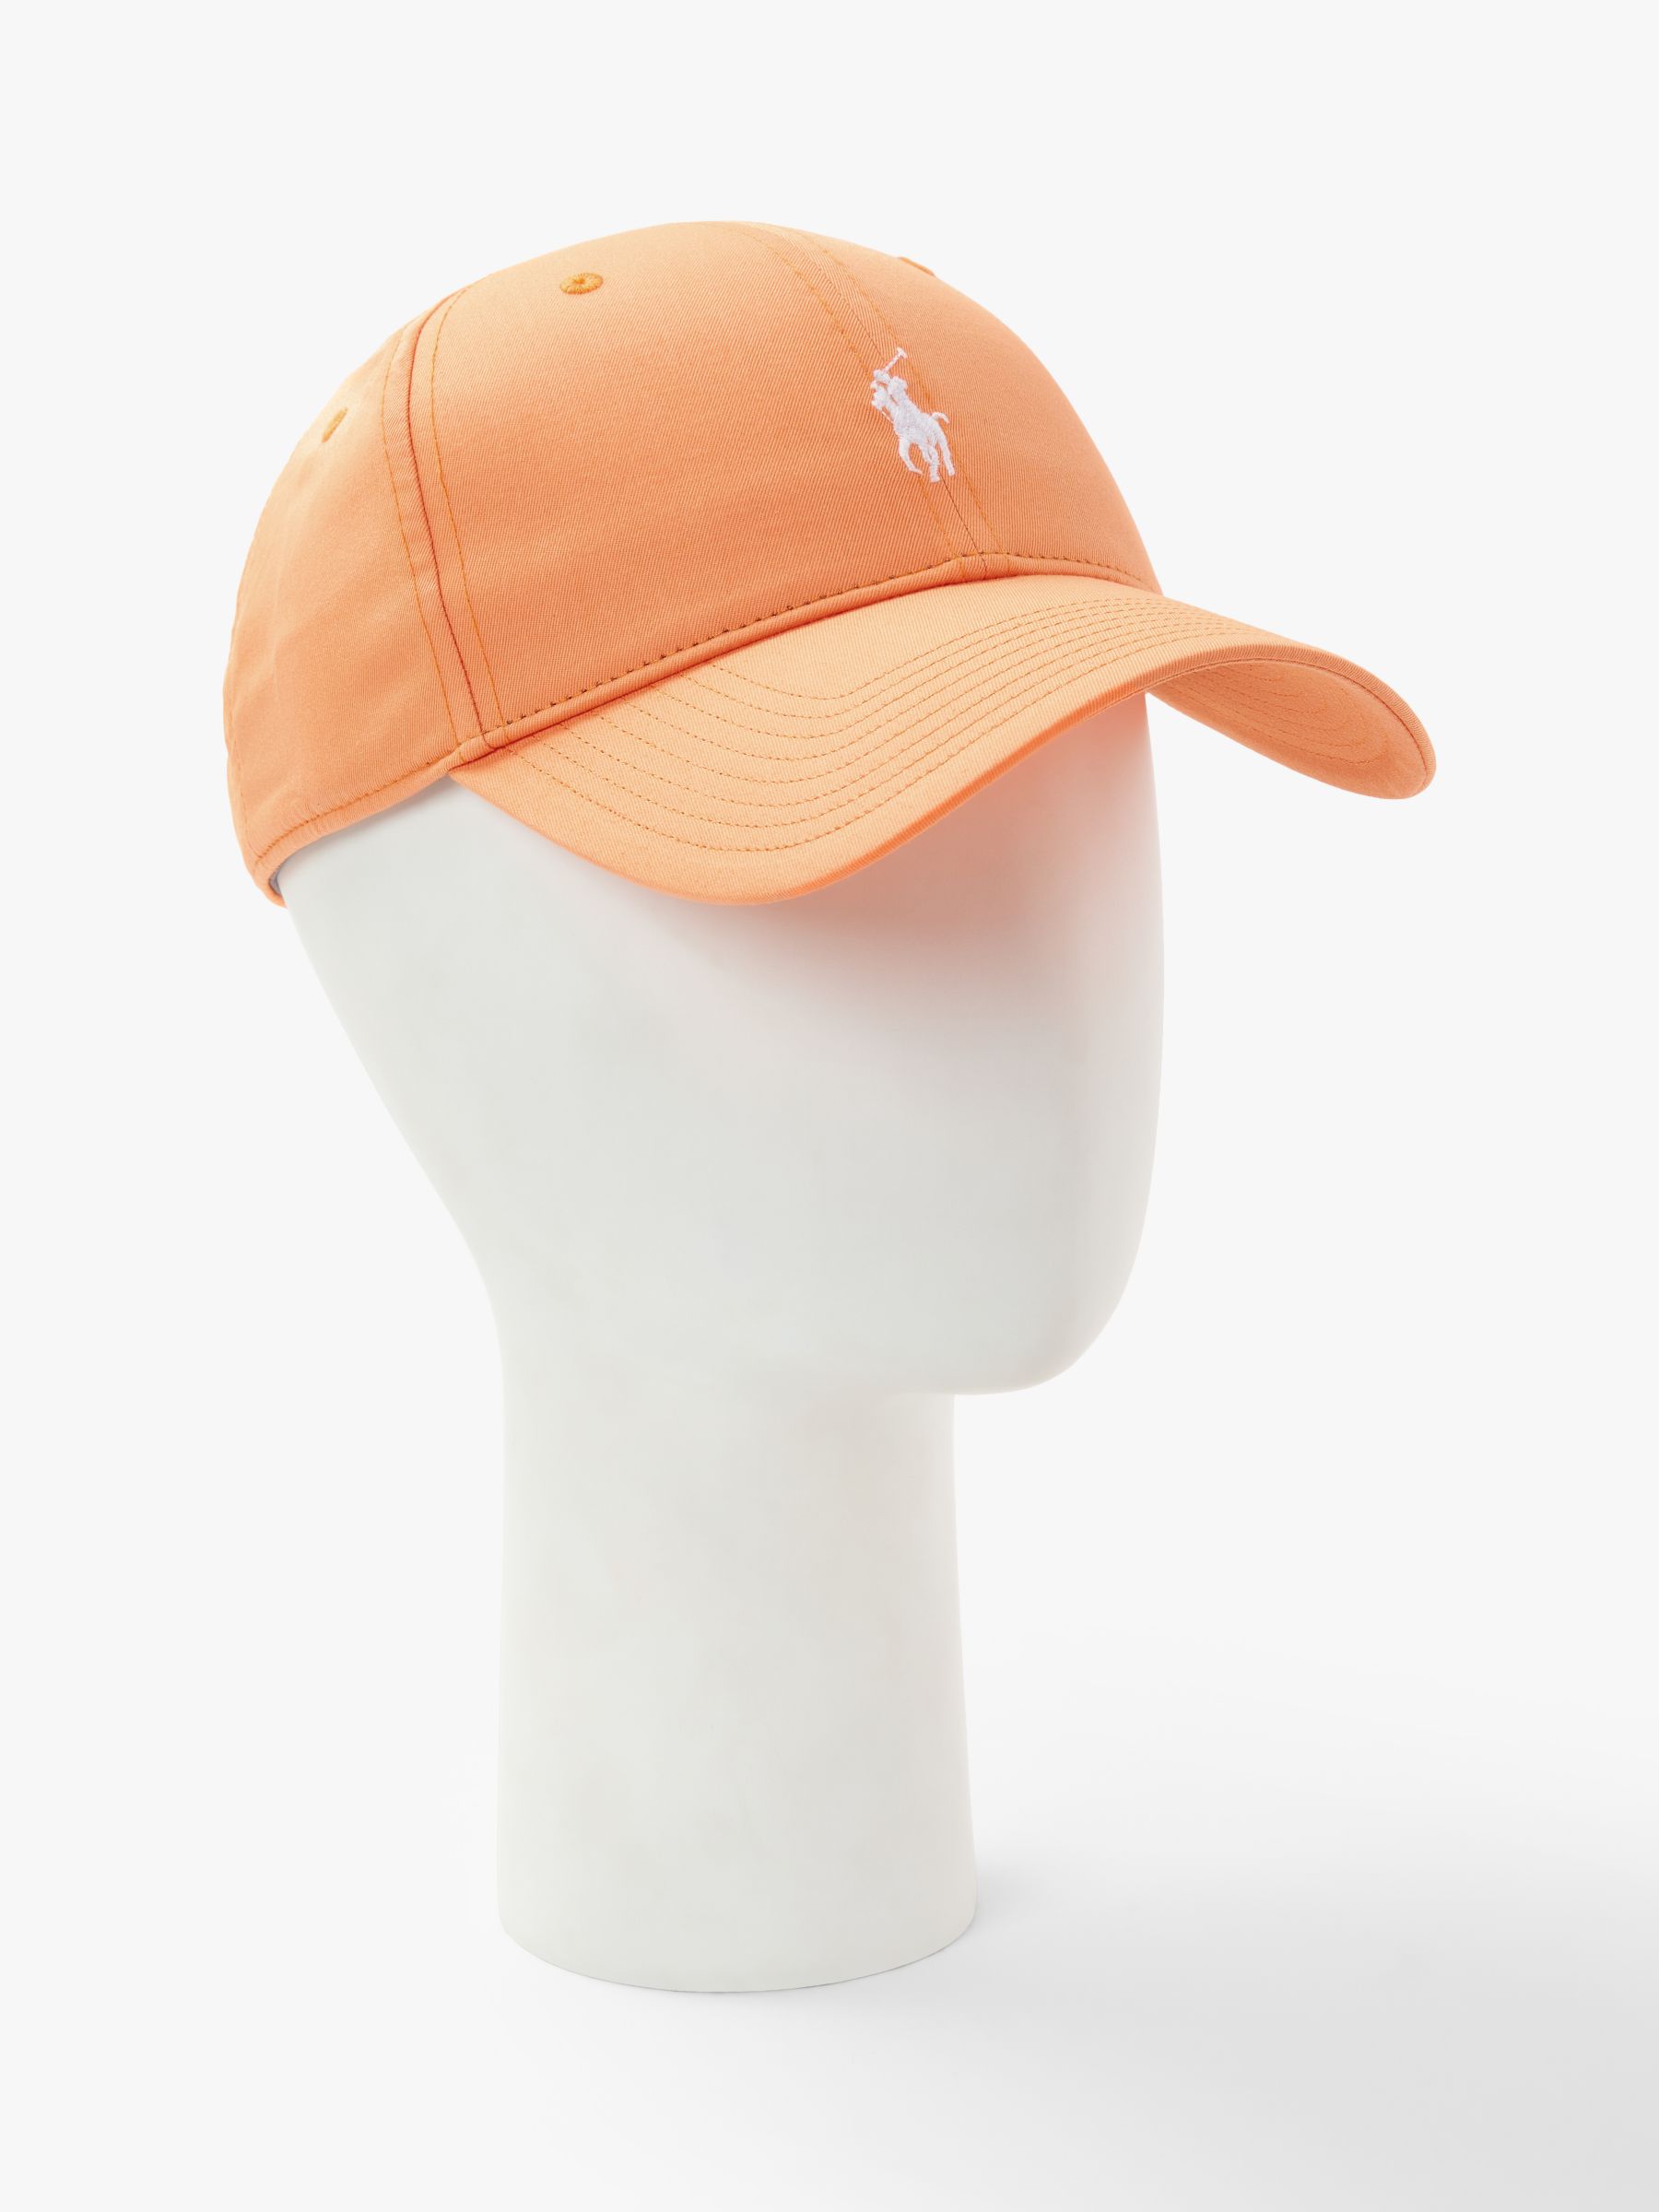 peach polo hat